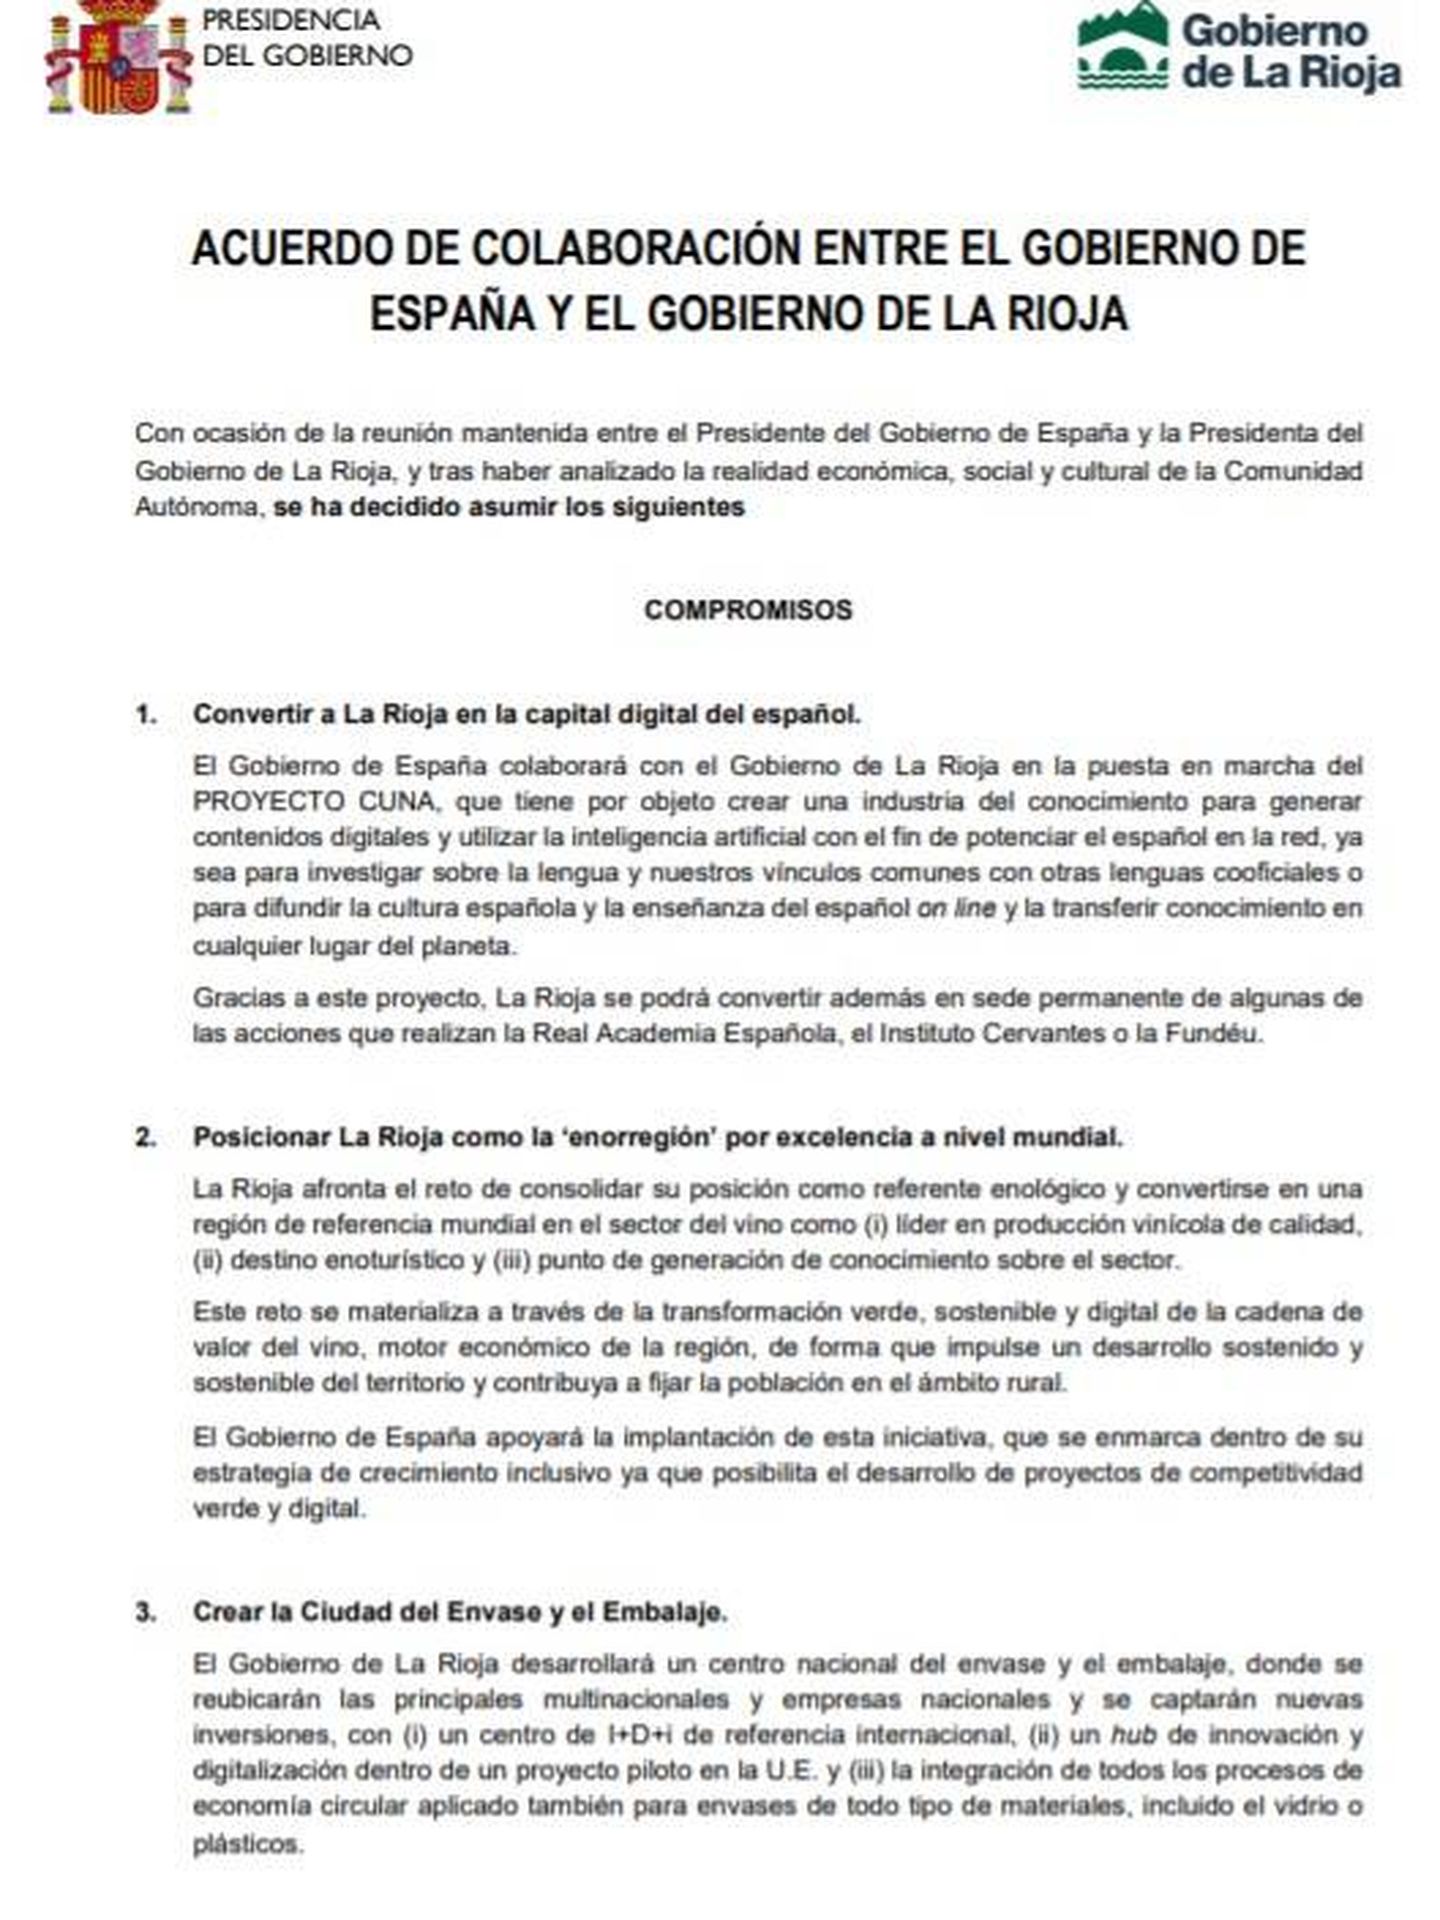 Consulte aquí en PDF el acuerdo entre el Gobierno de España y el Gobierno de La Rioja de este 28 de febrero de 2020.